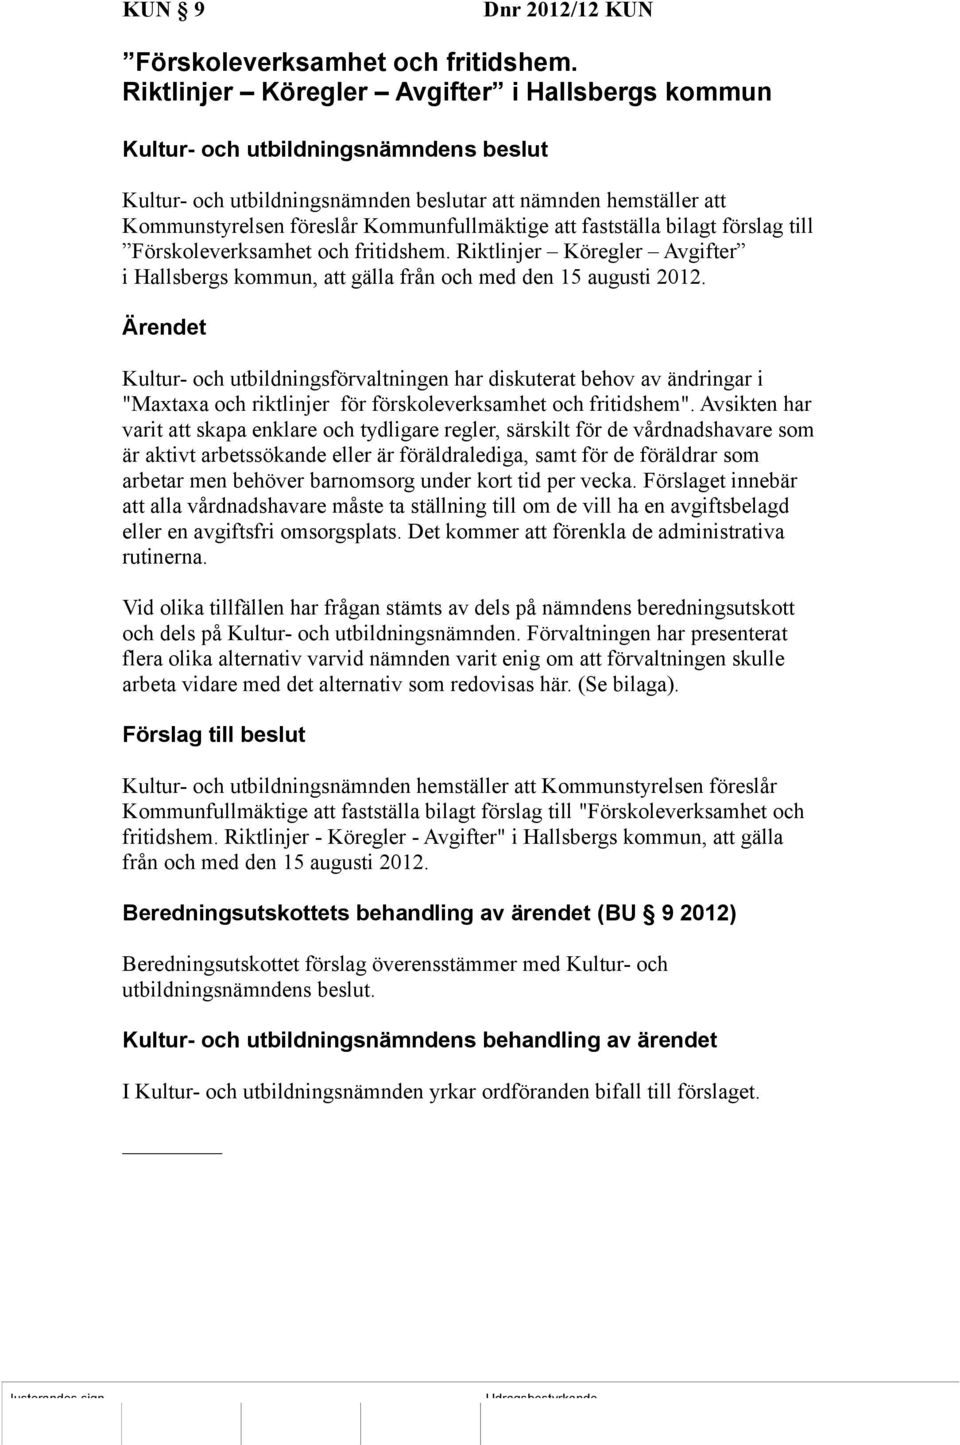 Förskoleverksamhet och fritidshem. Riktlinjer Köregler Avgifter i Hallsbergs kommun, att gälla från och med den 15 augusti 2012.